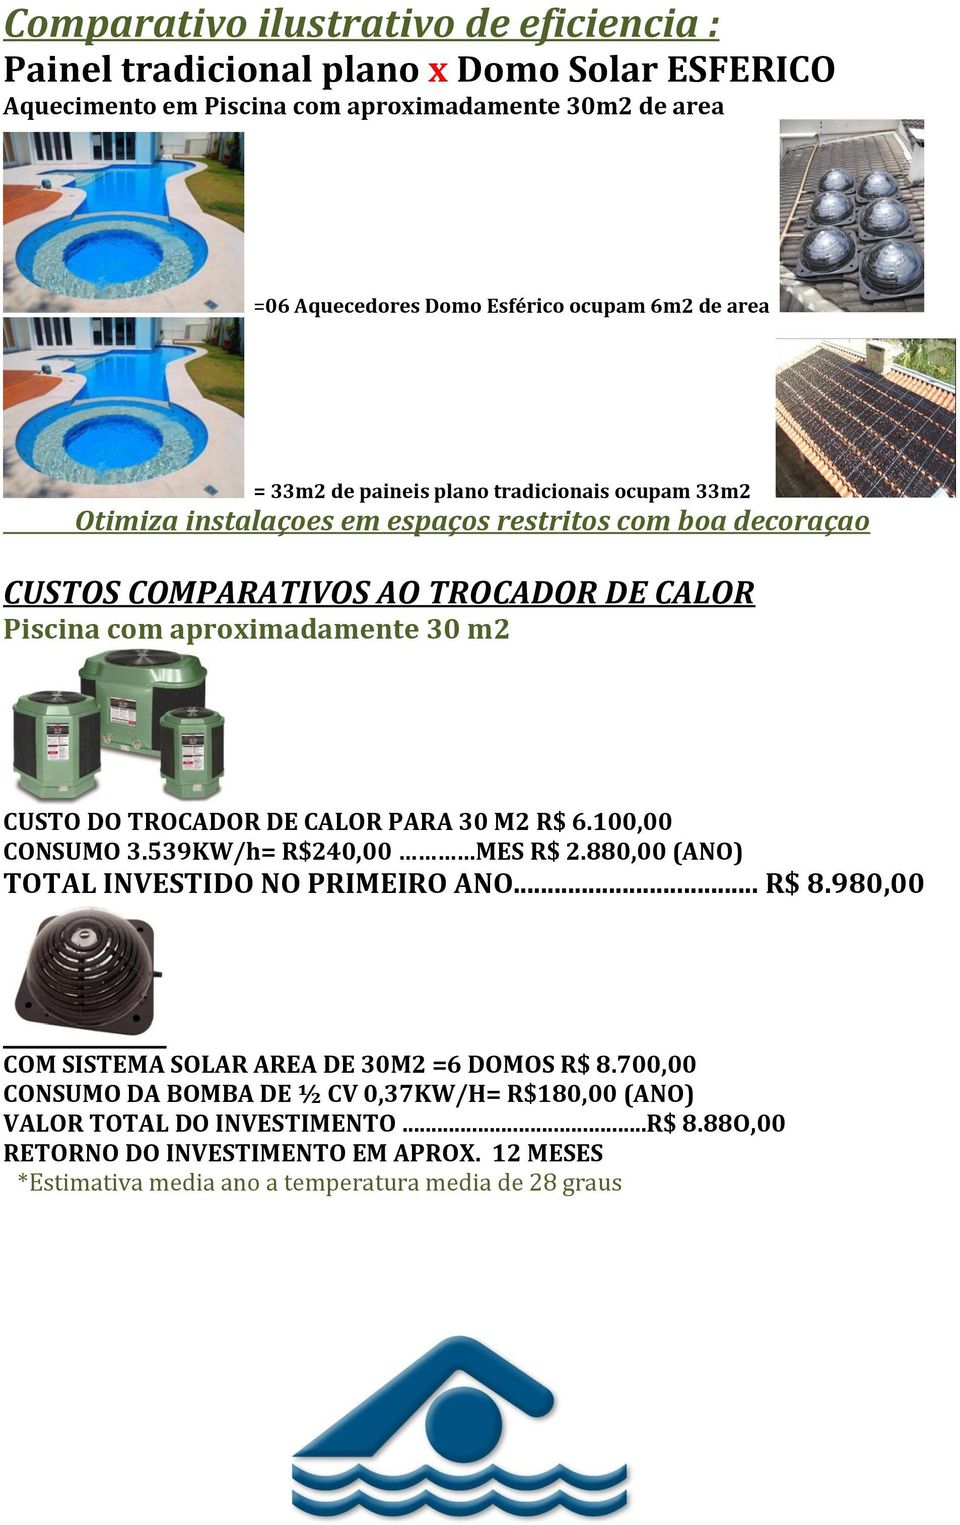 CUSTO DO TROCADOR DE CALOR PARA 30 M2 R$ 6.100,00 CONSUMO 3.539KW/h= R$240,00 MES R$ 2.880,00 (ANO) TOTAL INVESTIDO NO PRIMEIRO ANO... R$ 8.